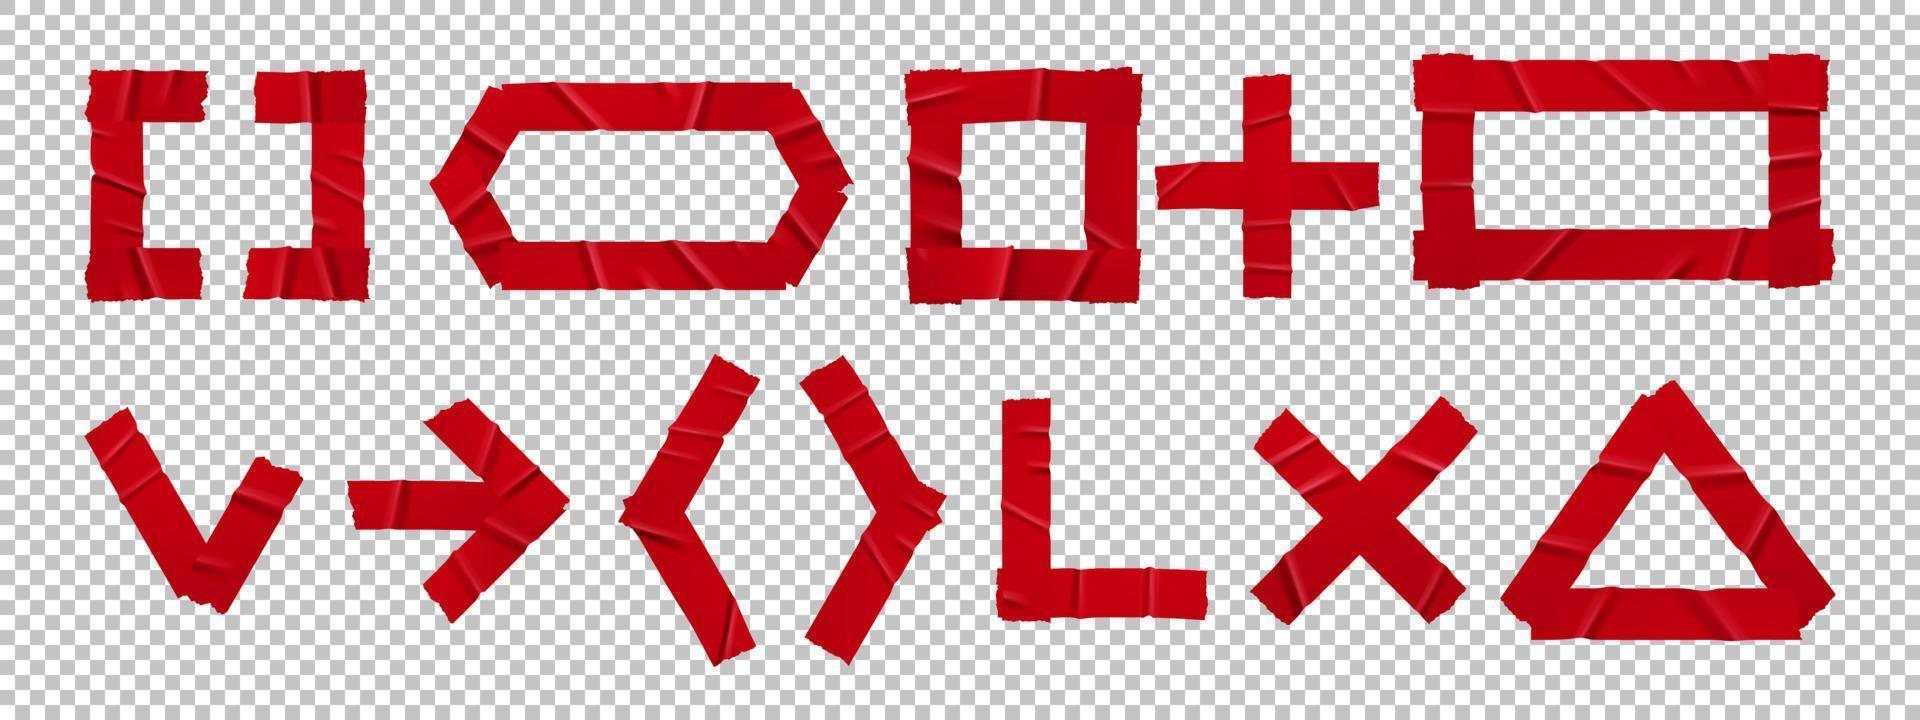 ensemble de signes et de symboles de patchs de ruban adhésif rouge vecteur